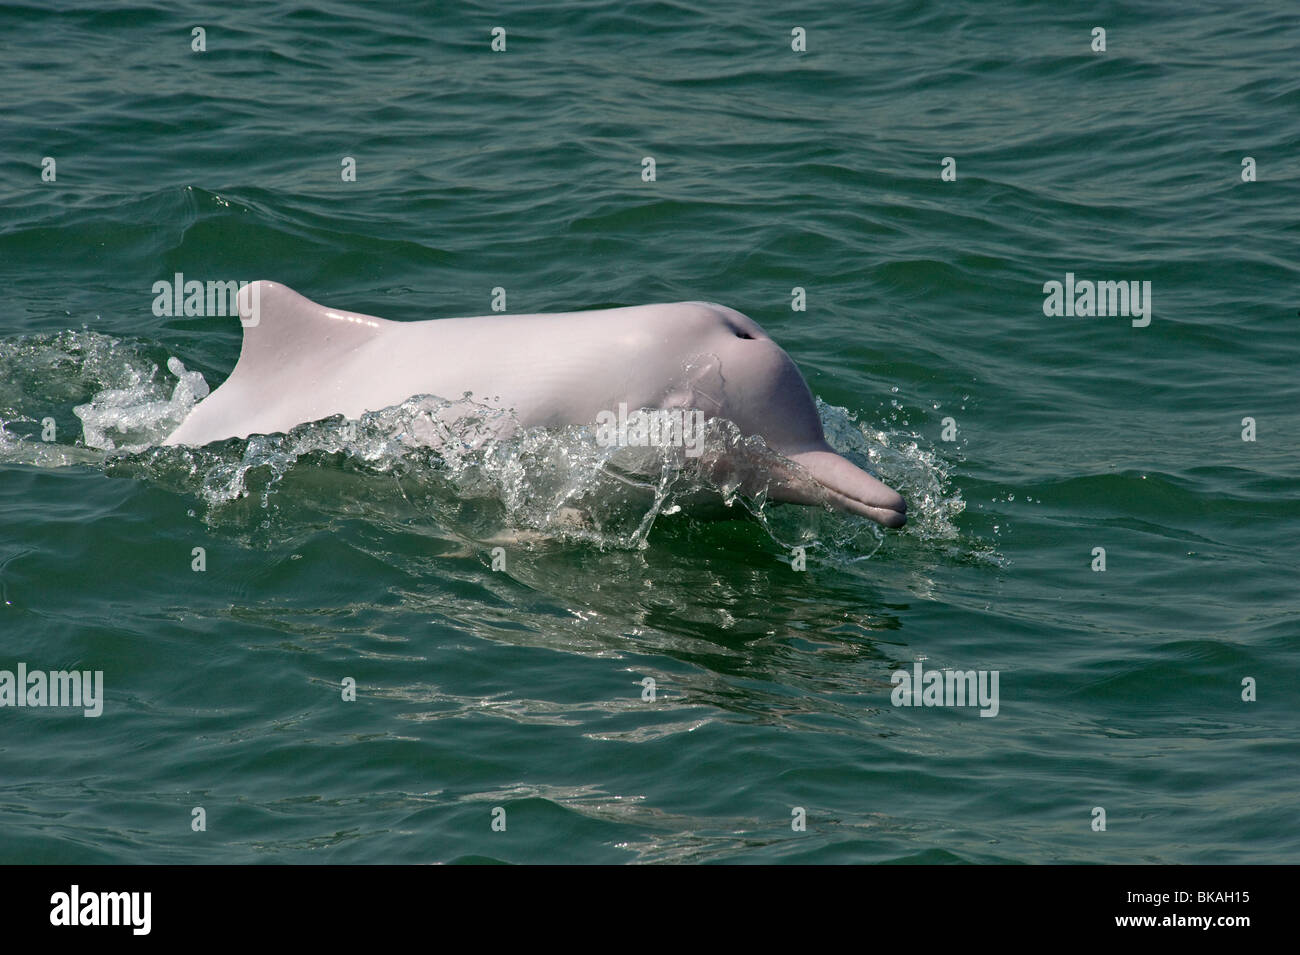 Dauphin rose nageant dans les eaux de Hong Kong est pensé pour être une sous-espèce de dauphin blanc chinois, Sousa chinensis. Banque D'Images